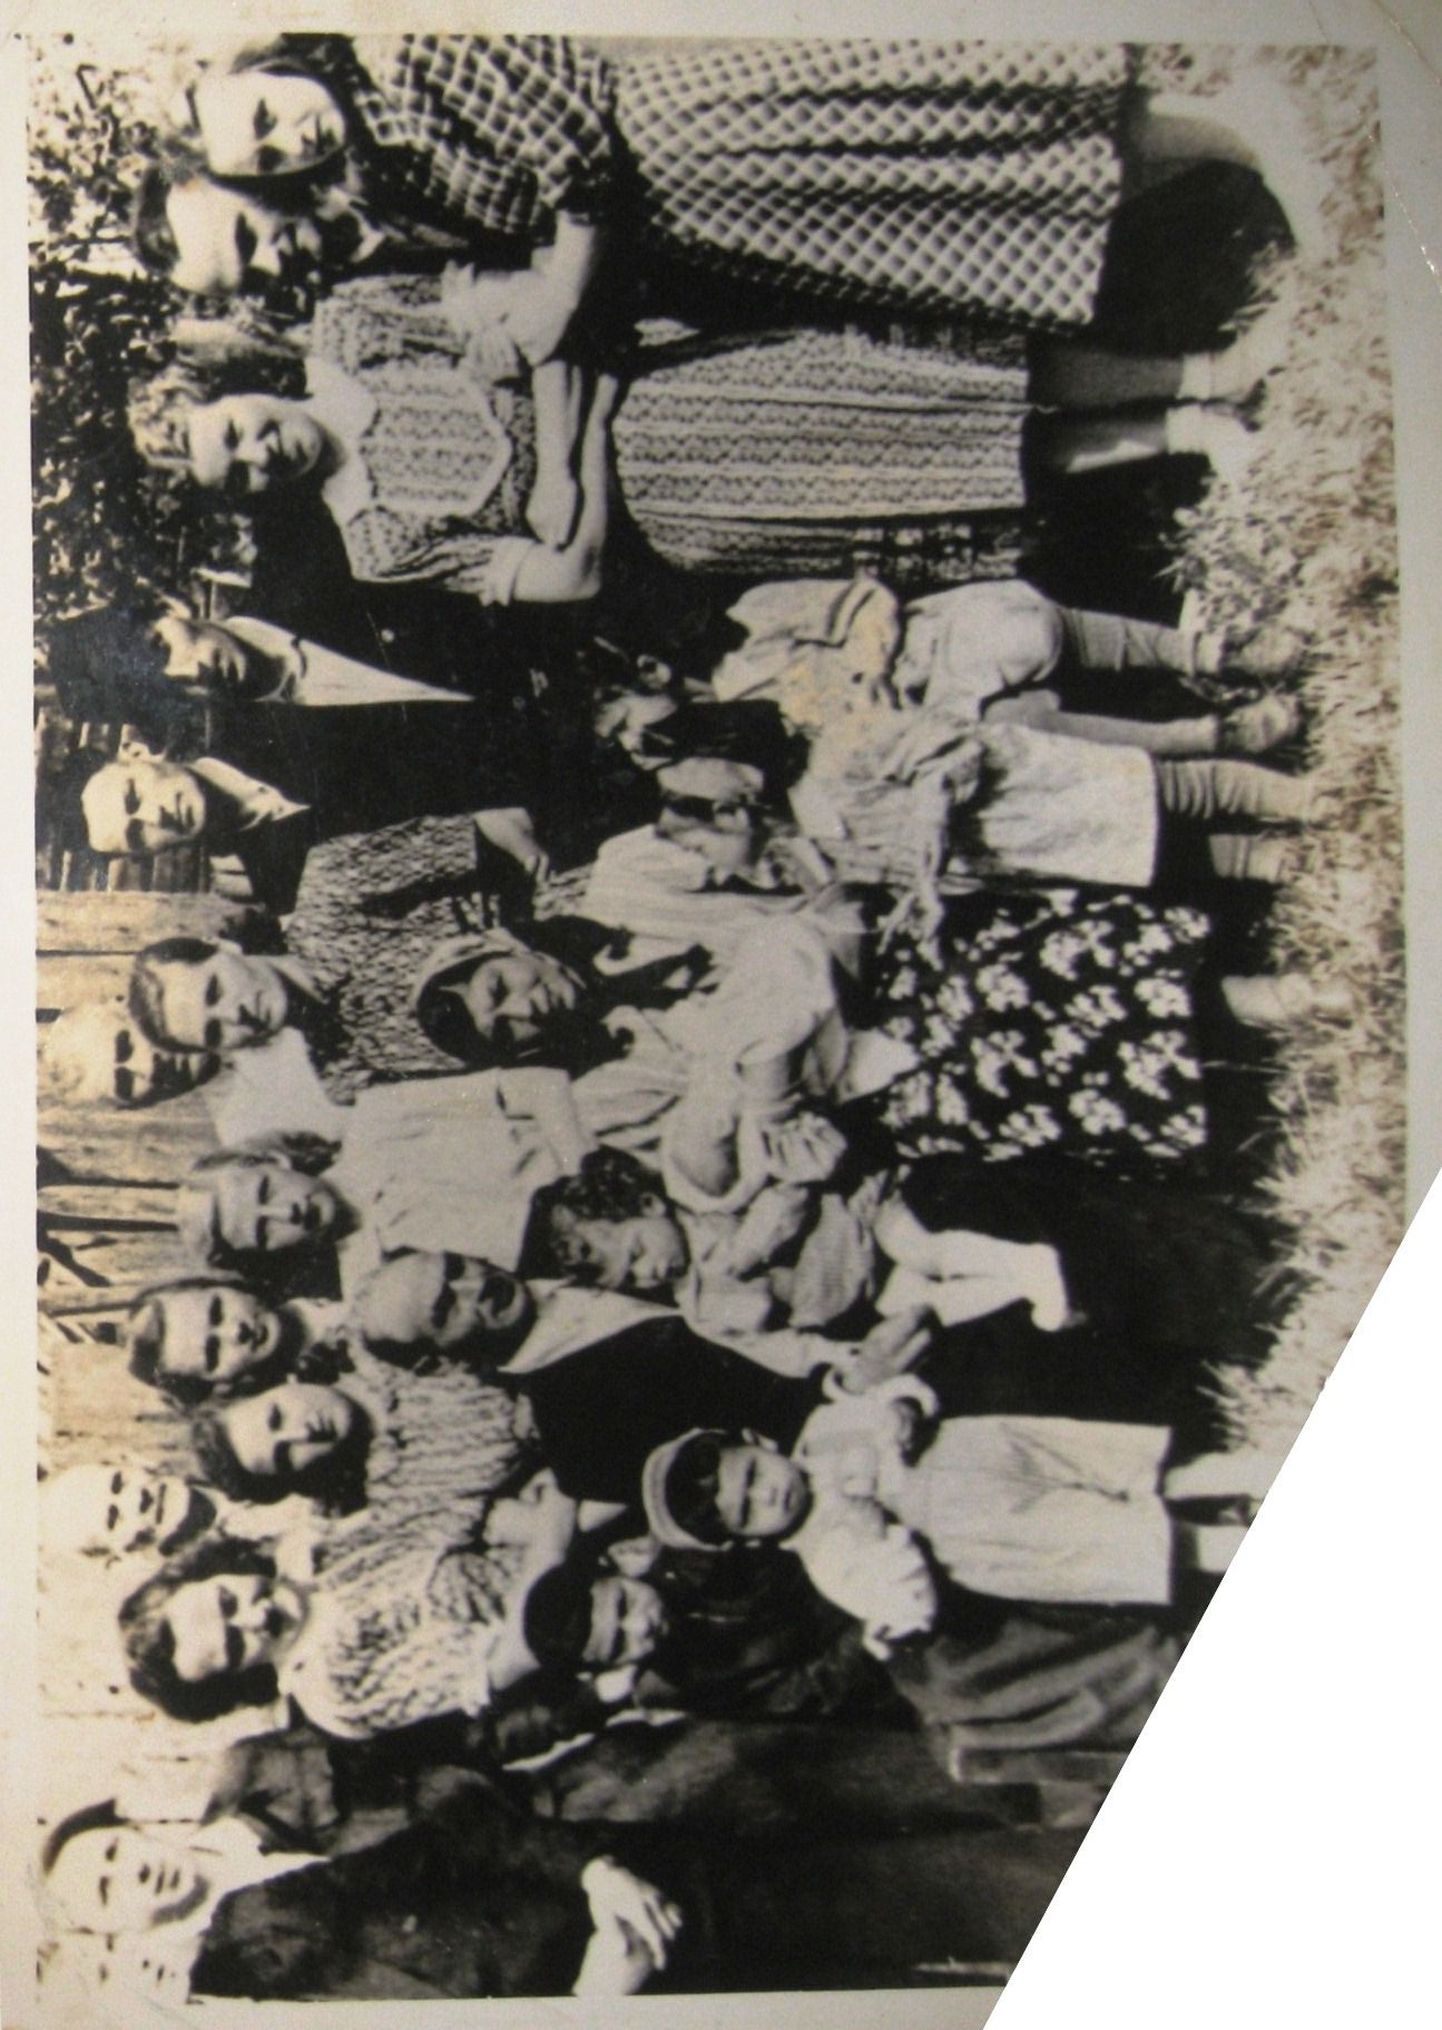 Kaia ristimise pilt Tõrvas. Vanem vend Villu (ees vasakult), August, isa Friedrich, süles Richard, ema Emma Kozlovska süles pisike Kaia, vanemaid piidleb Bergitta, tema taga õde Regina.